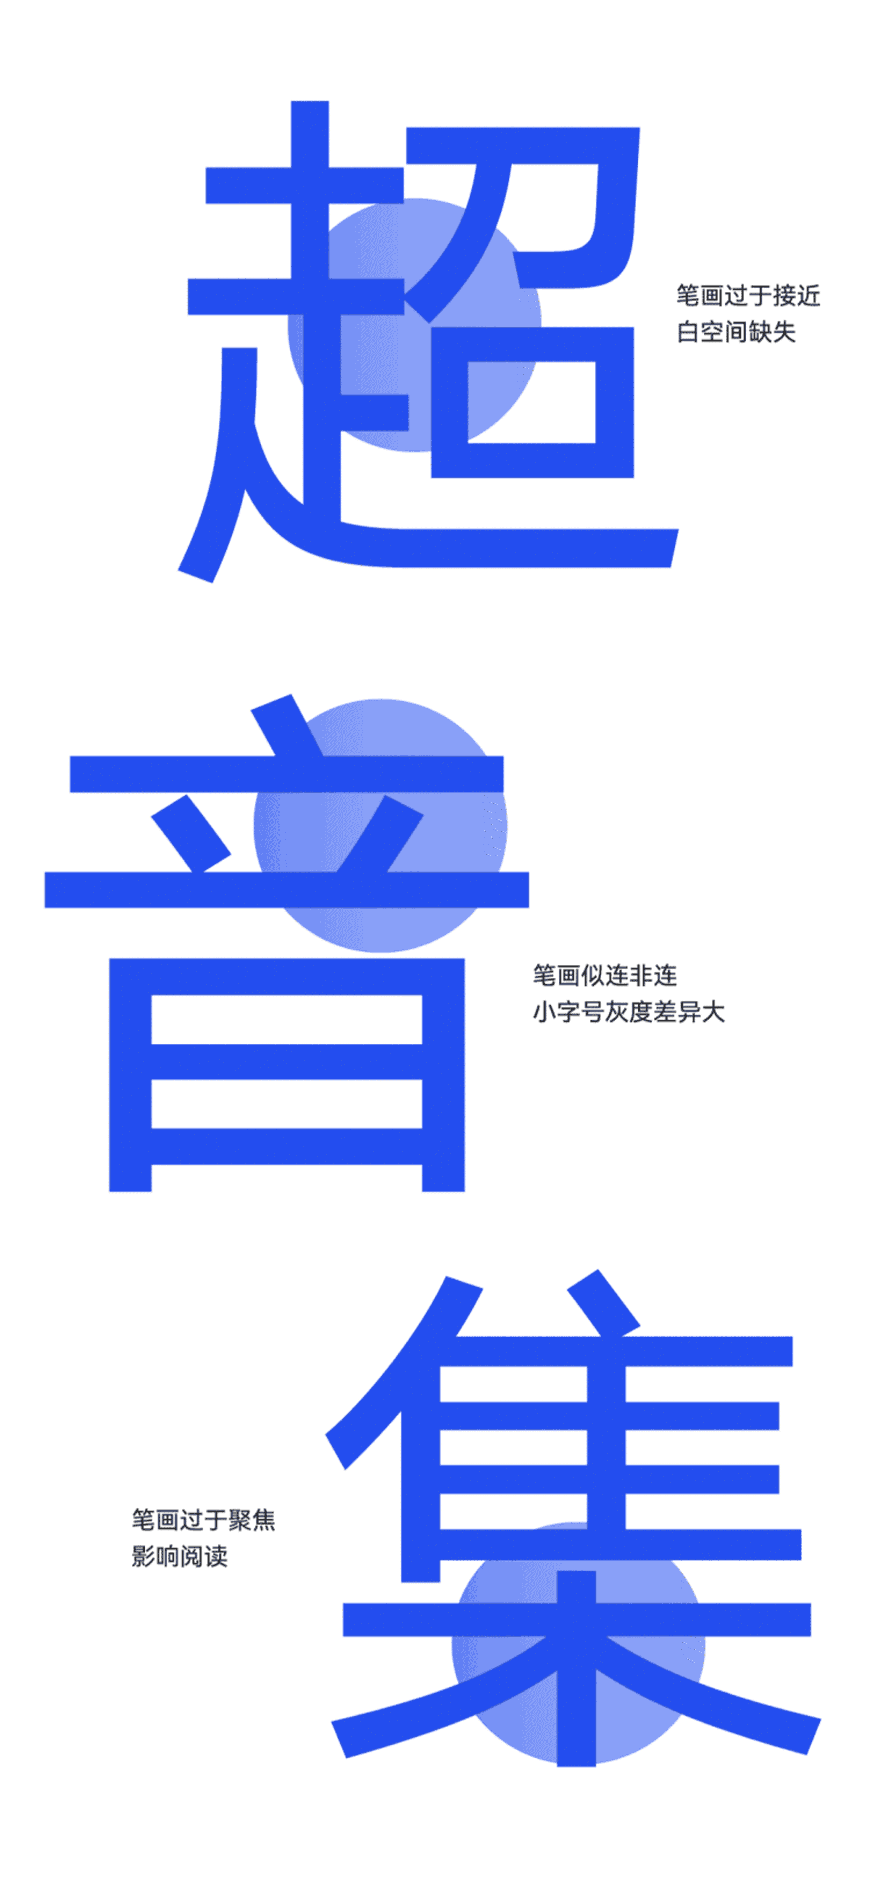 免费字体下载！一款简约现代平衡美观的中文字体—HarmonyOS Sans